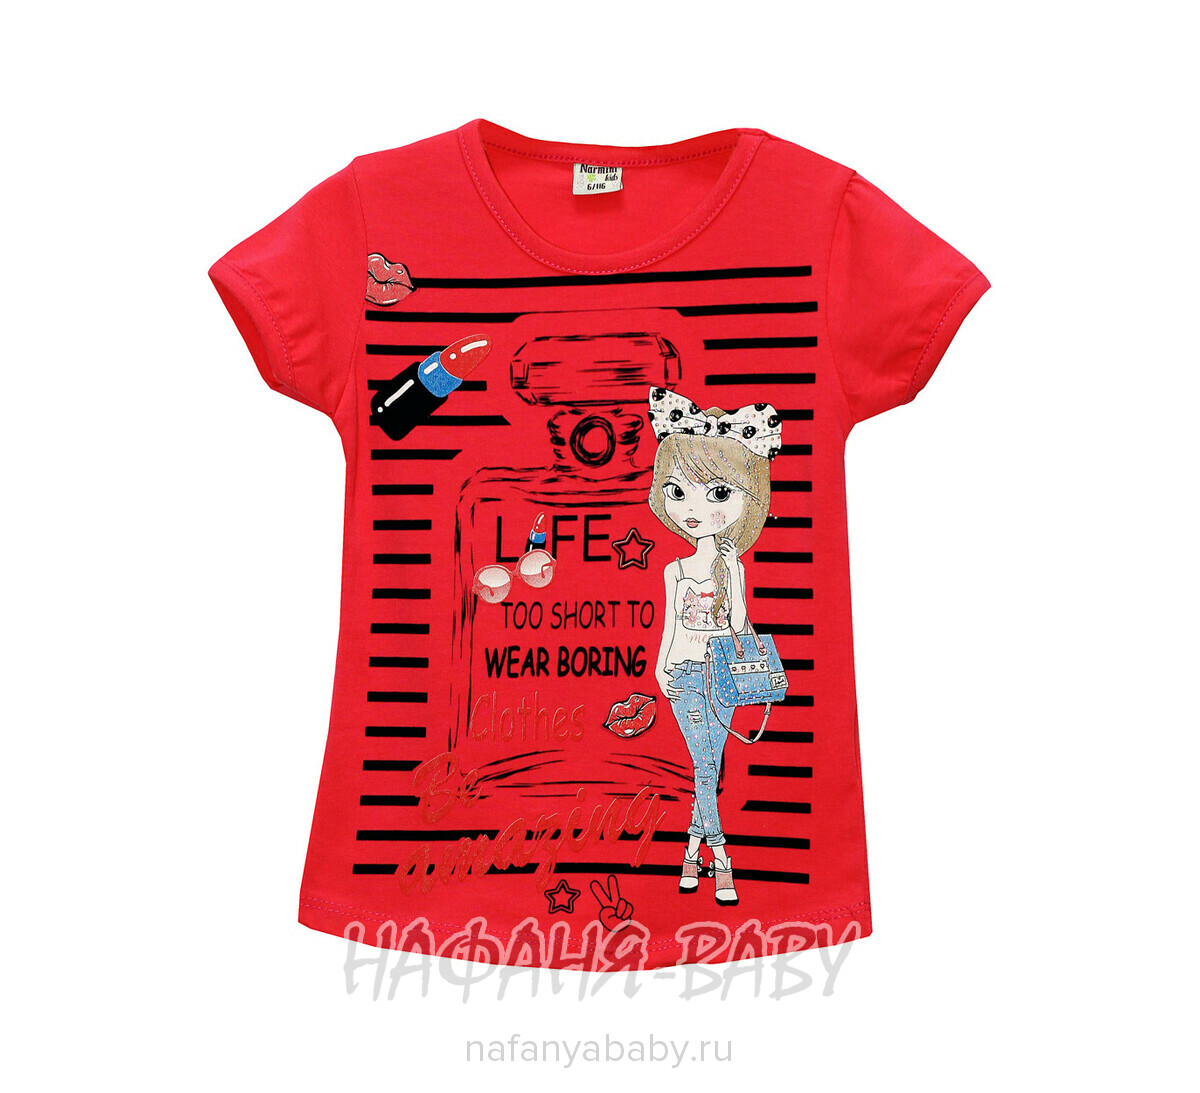 Детская футболка NARMINI, купить в интернет магазине Нафаня. арт: 4678.